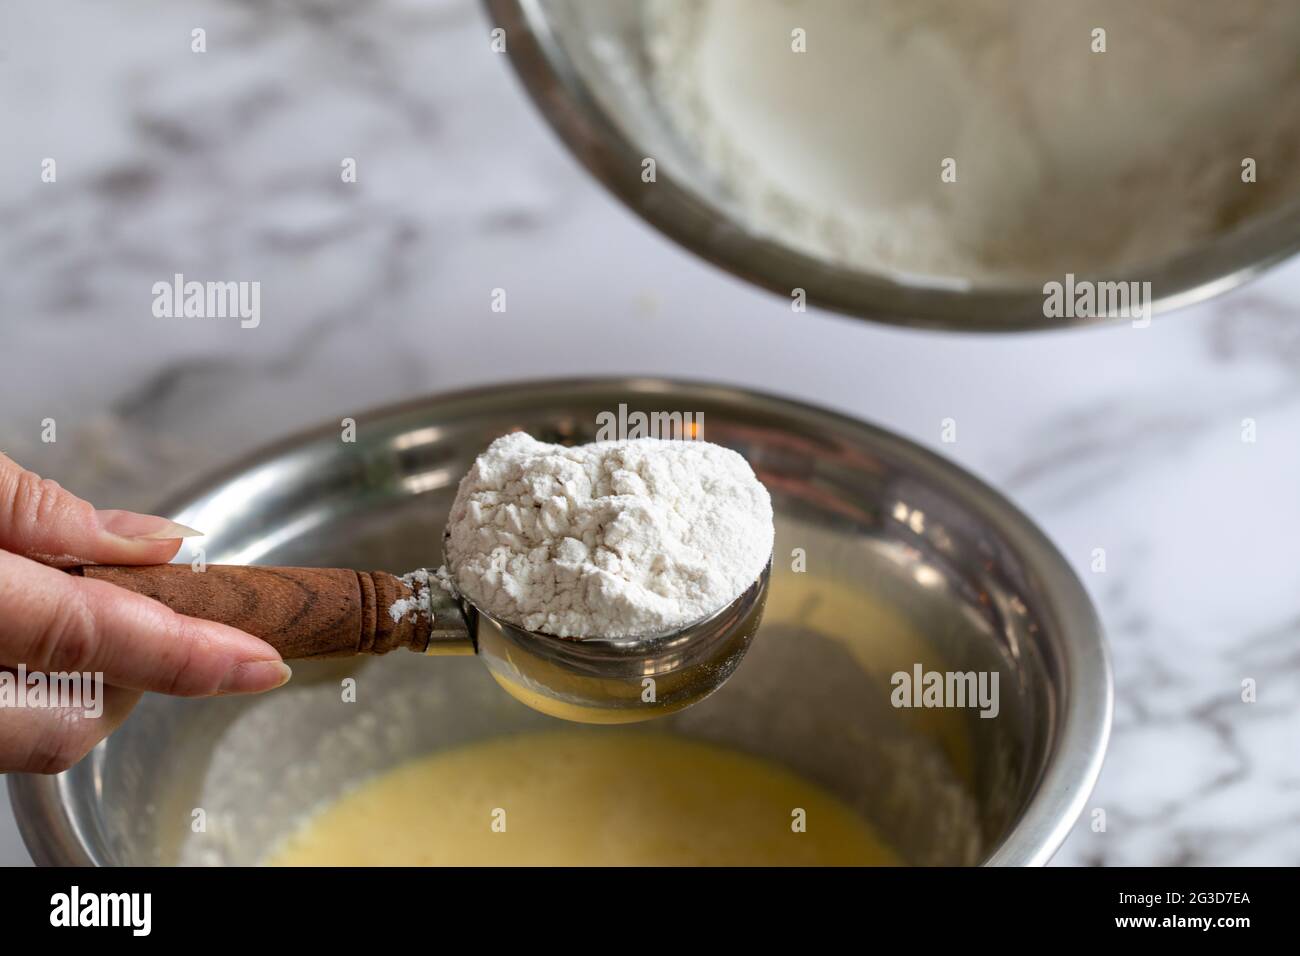 Main de femme tenant une cuillère de mesure pleine de farine sur un saladier rond en métal rempli d'un mélange jaune pour la pâtisserie Banque D'Images